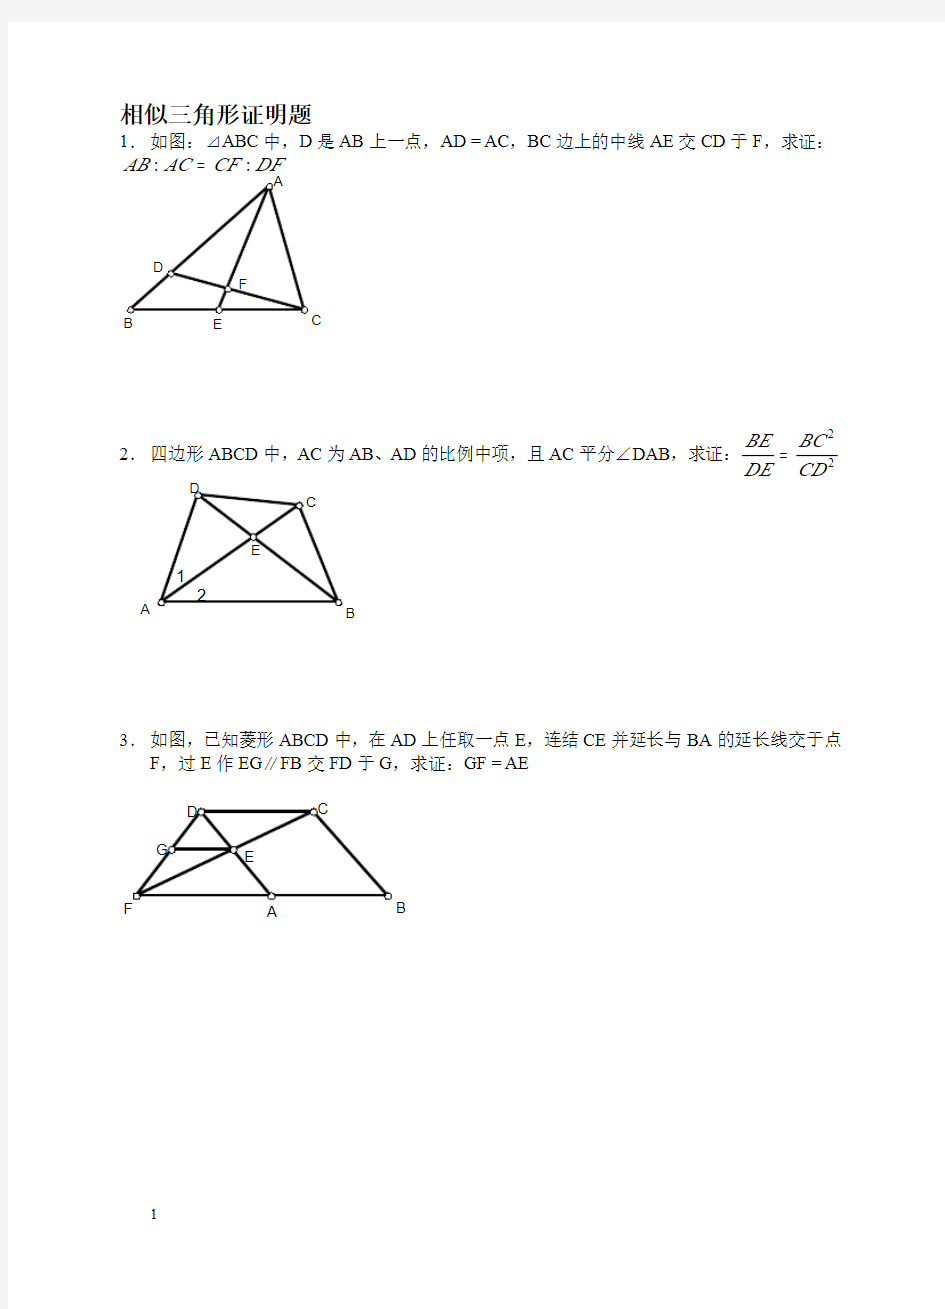 相似三角形证明题